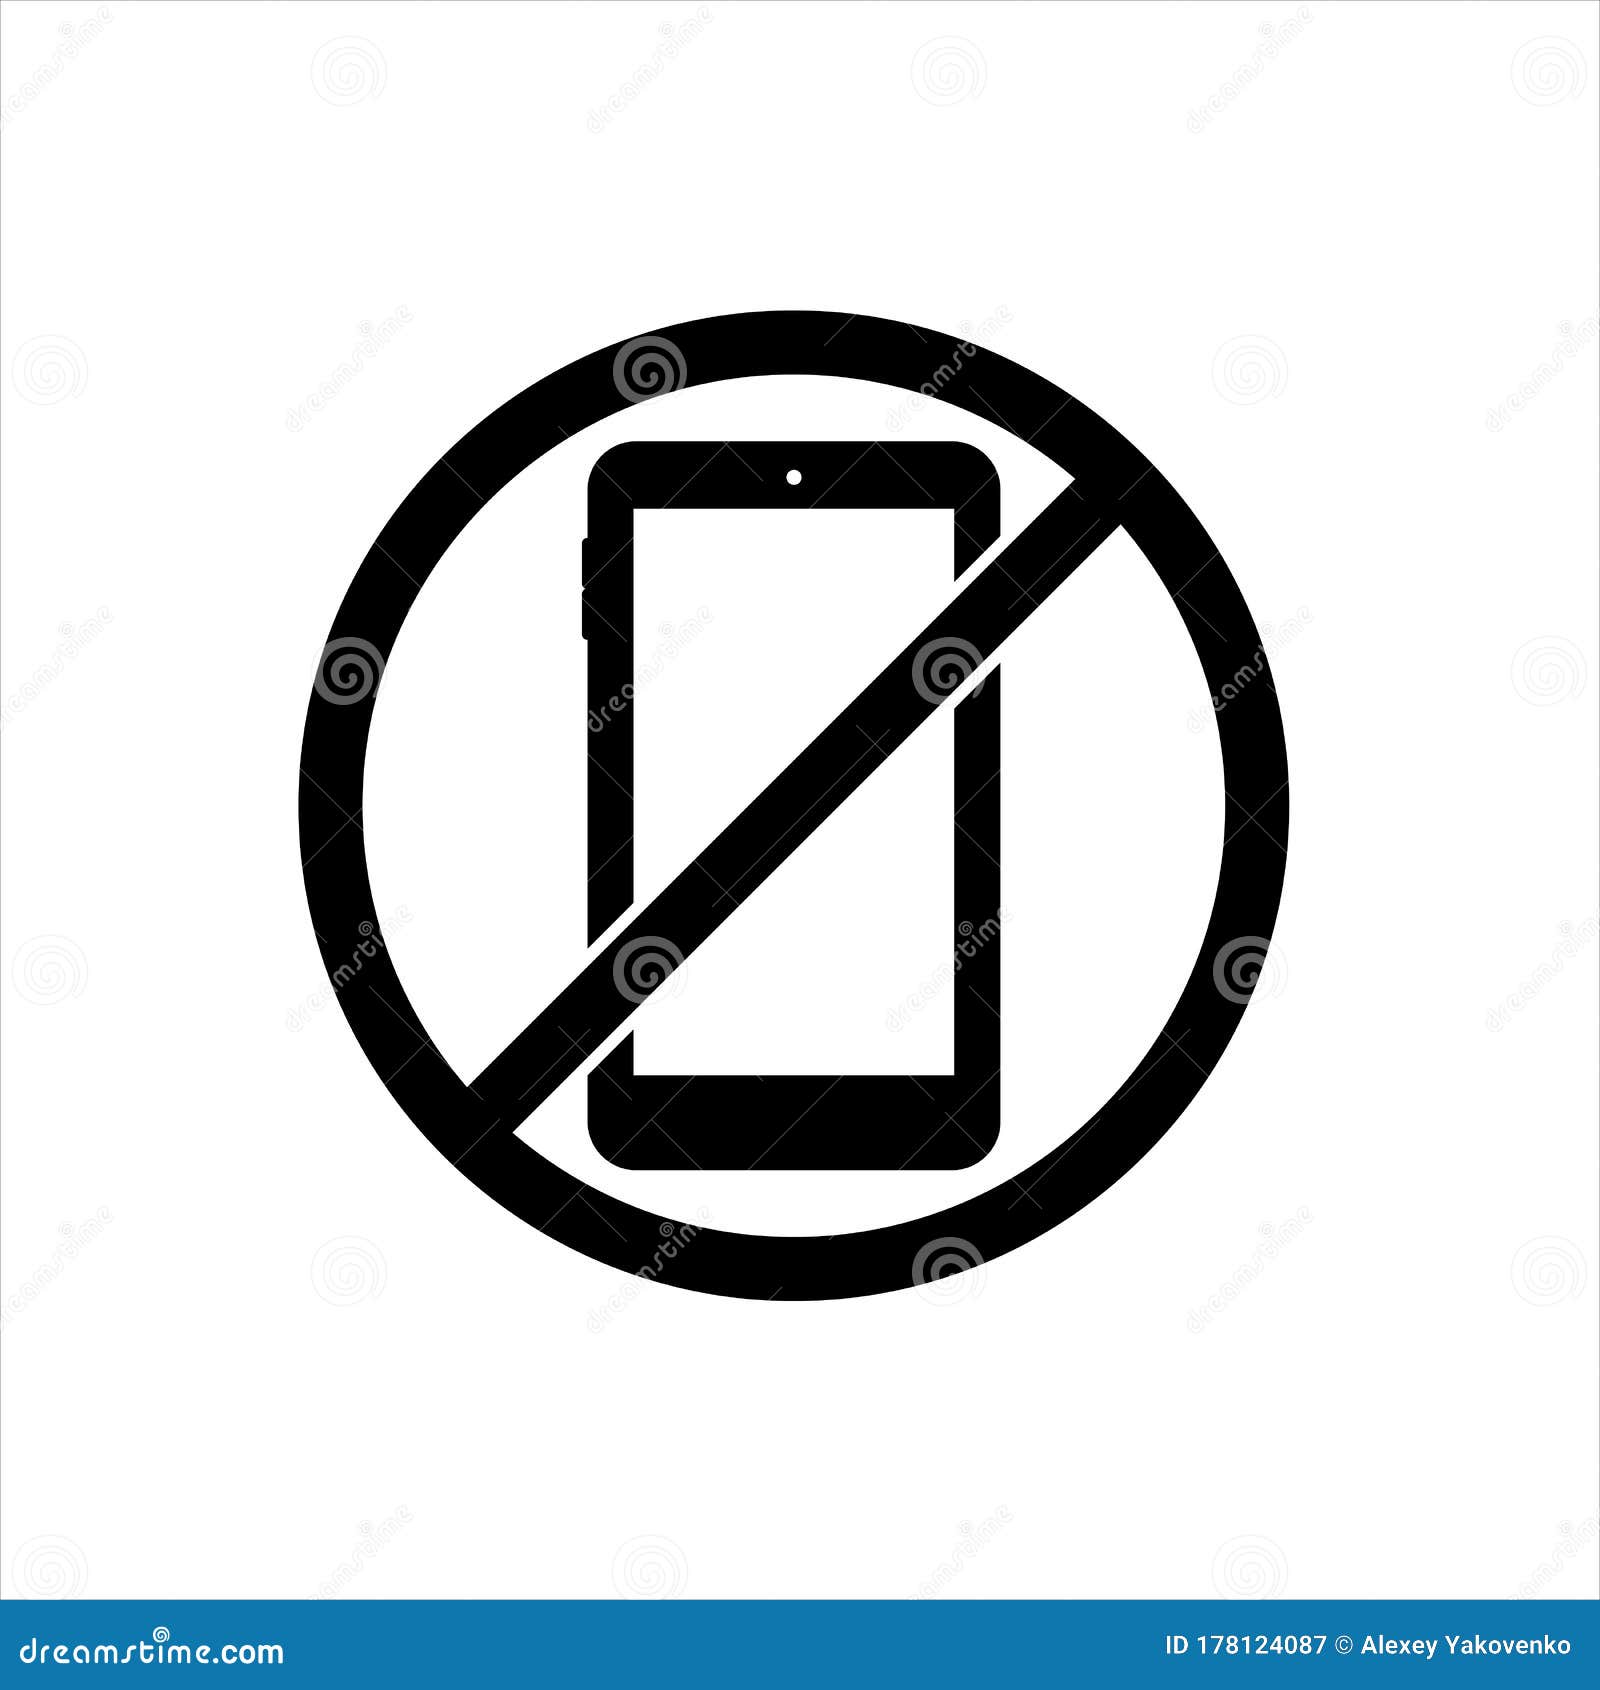 Cấm điện thoại hoặc tắt điện thoại trên nền đen giúp tránh sự phân tâm và tập trung vào chủ đề chính của hình ảnh. Bạn sẽ không còn bị cuốn vào các thông báo và cuộc gọi nữa.